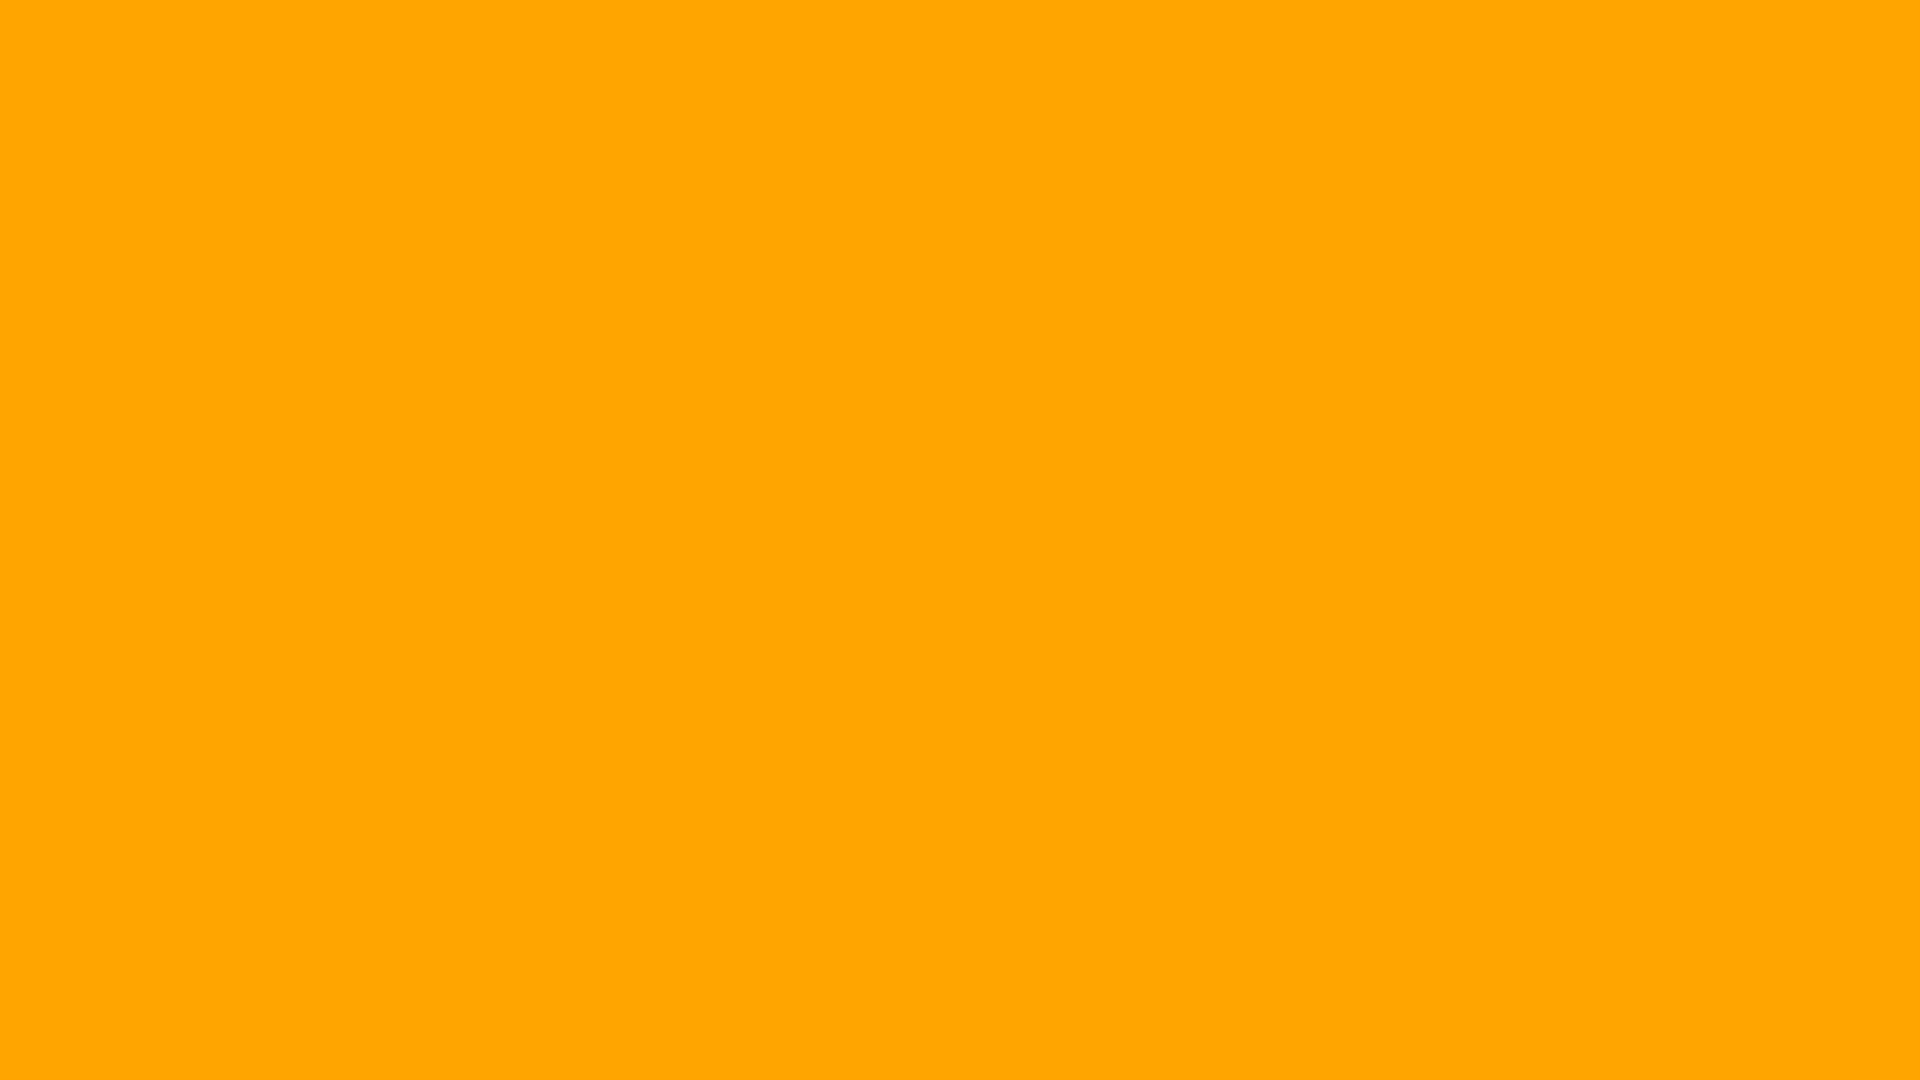 Bạn muốn tìm kiếm mã màu HTML dành cho màu cam chuyên nghiệp để tạo ra những thiết kế đẹp mắt và hấp dẫn? Điều đó đúng là một ý tưởng tuyệt vời! Hãy sử dụng mã màu HTML cho màu cam và choáng ngợp với những thiết kế tuyệt đẹp của bạn.